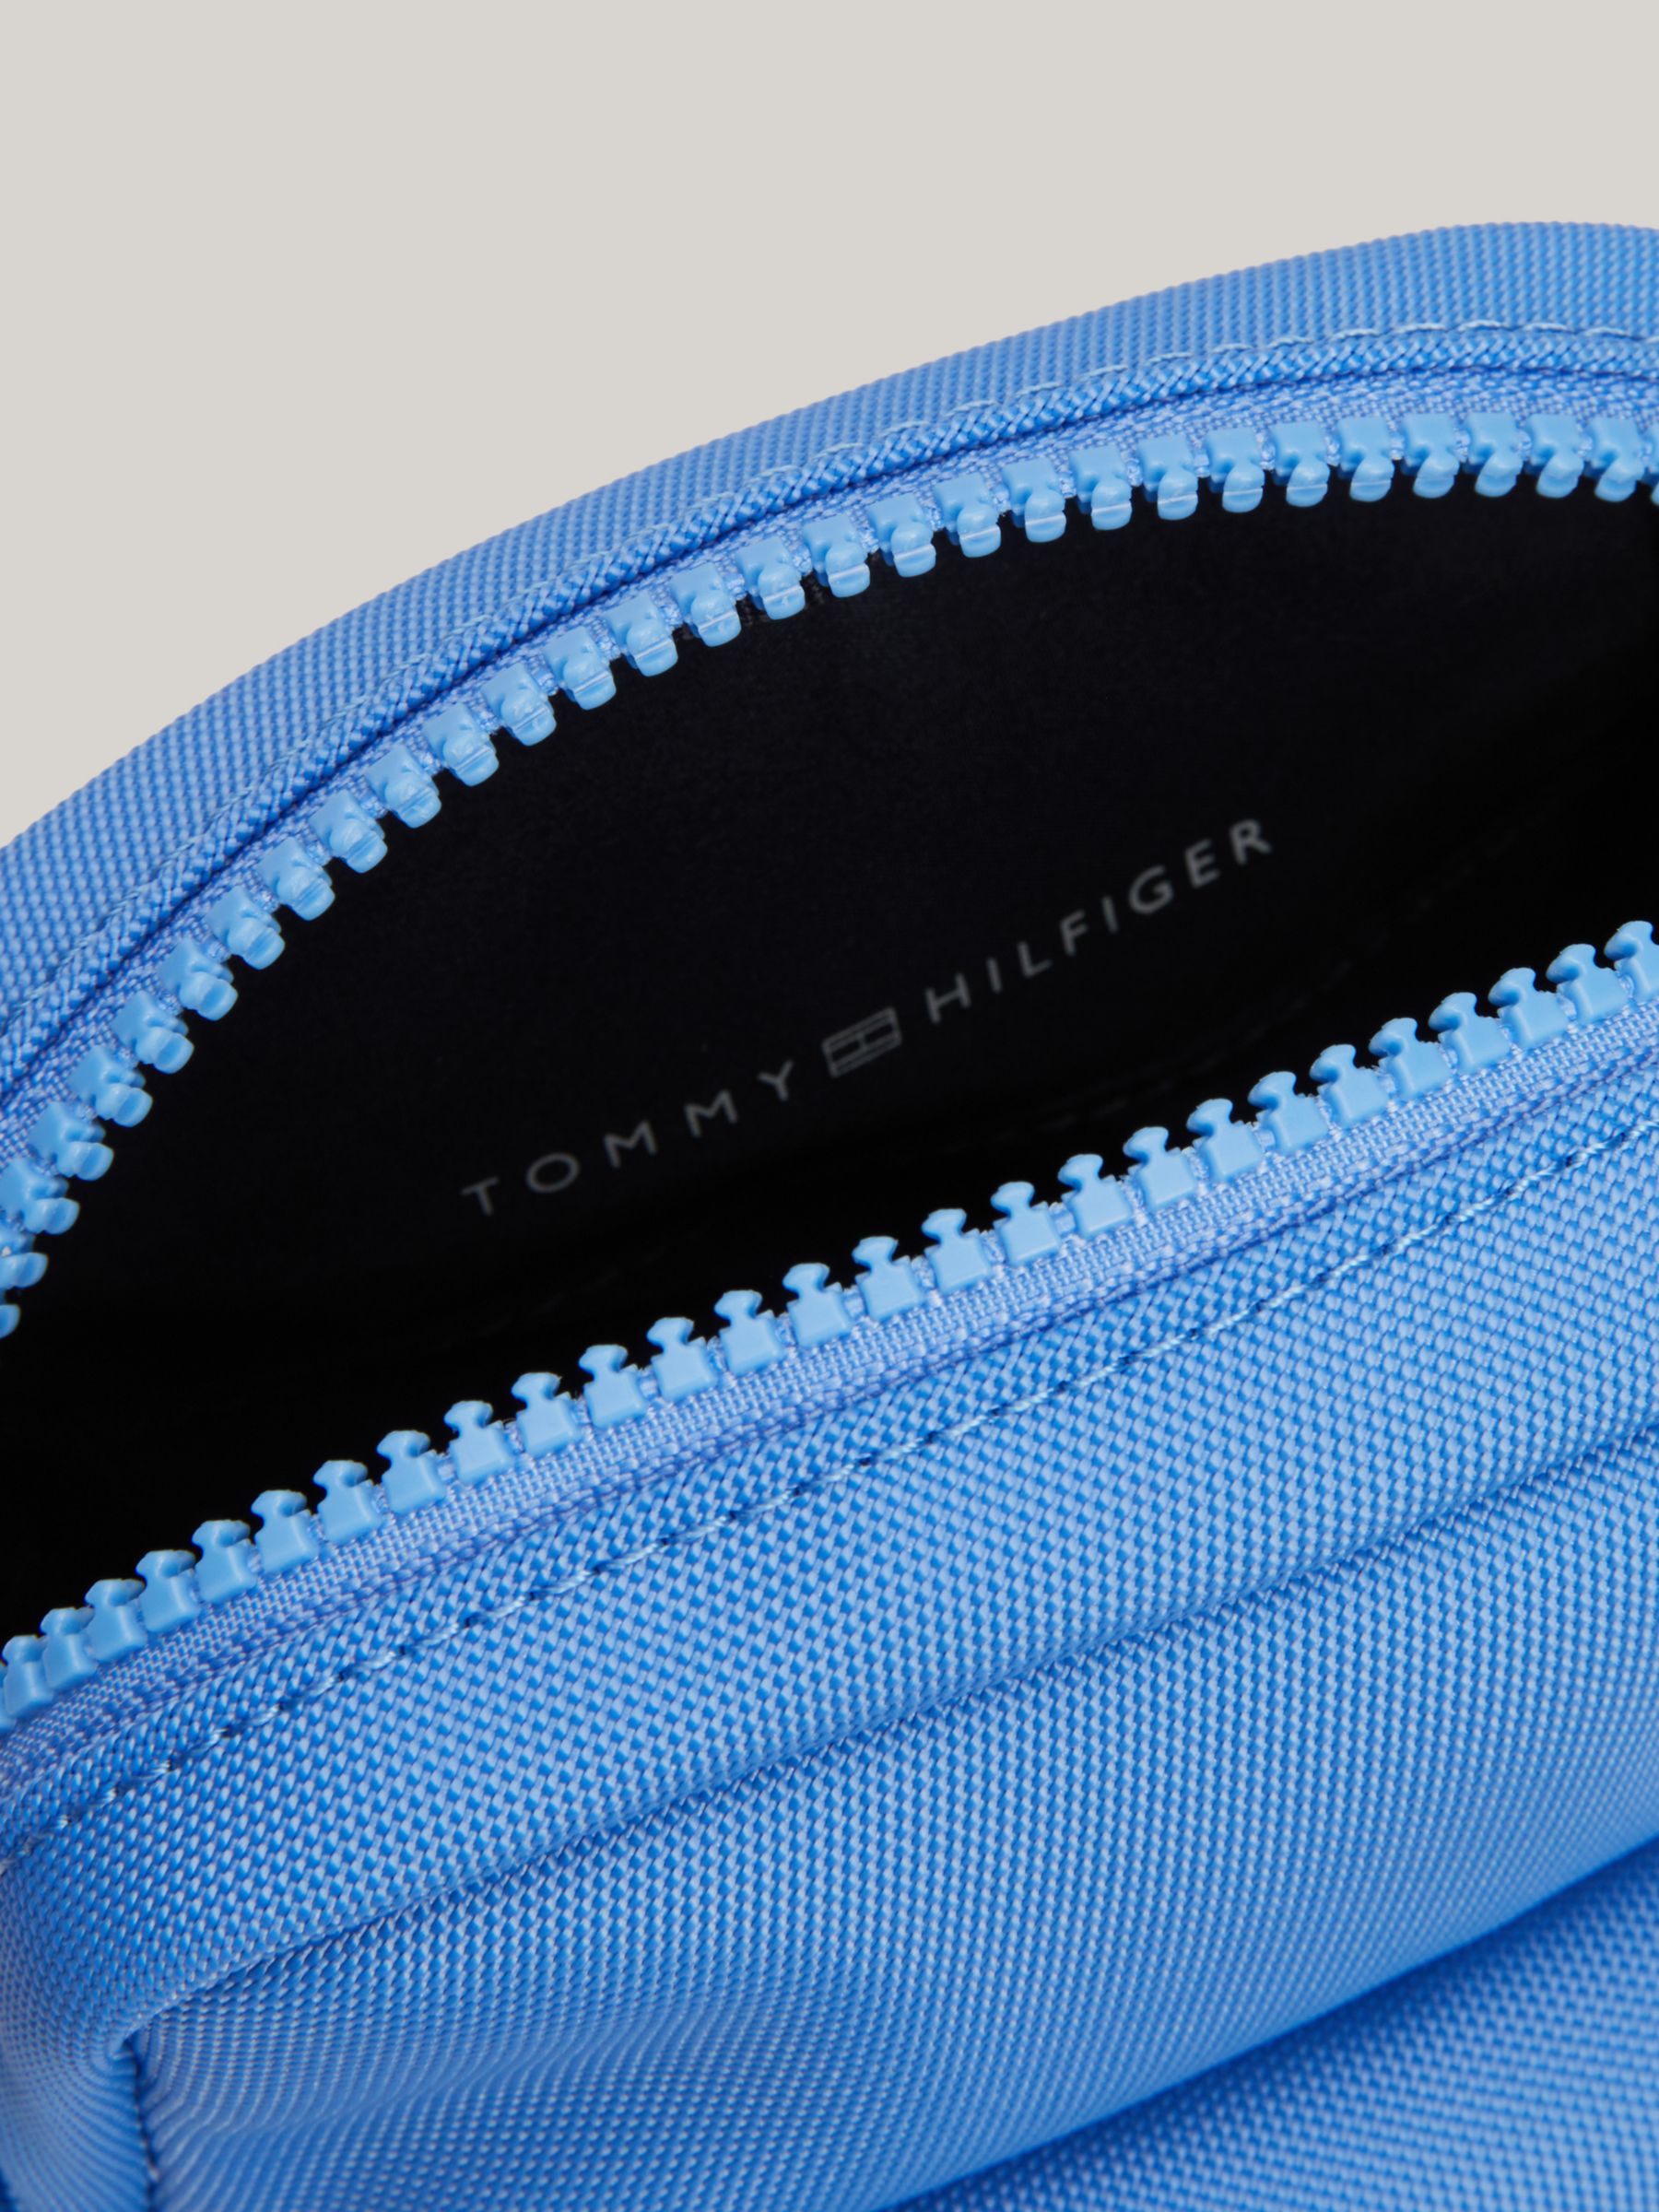 Buy Tommy Hilfiger Kids' Mini Reporter Bag, Blue Spell Online at johnlewis.com